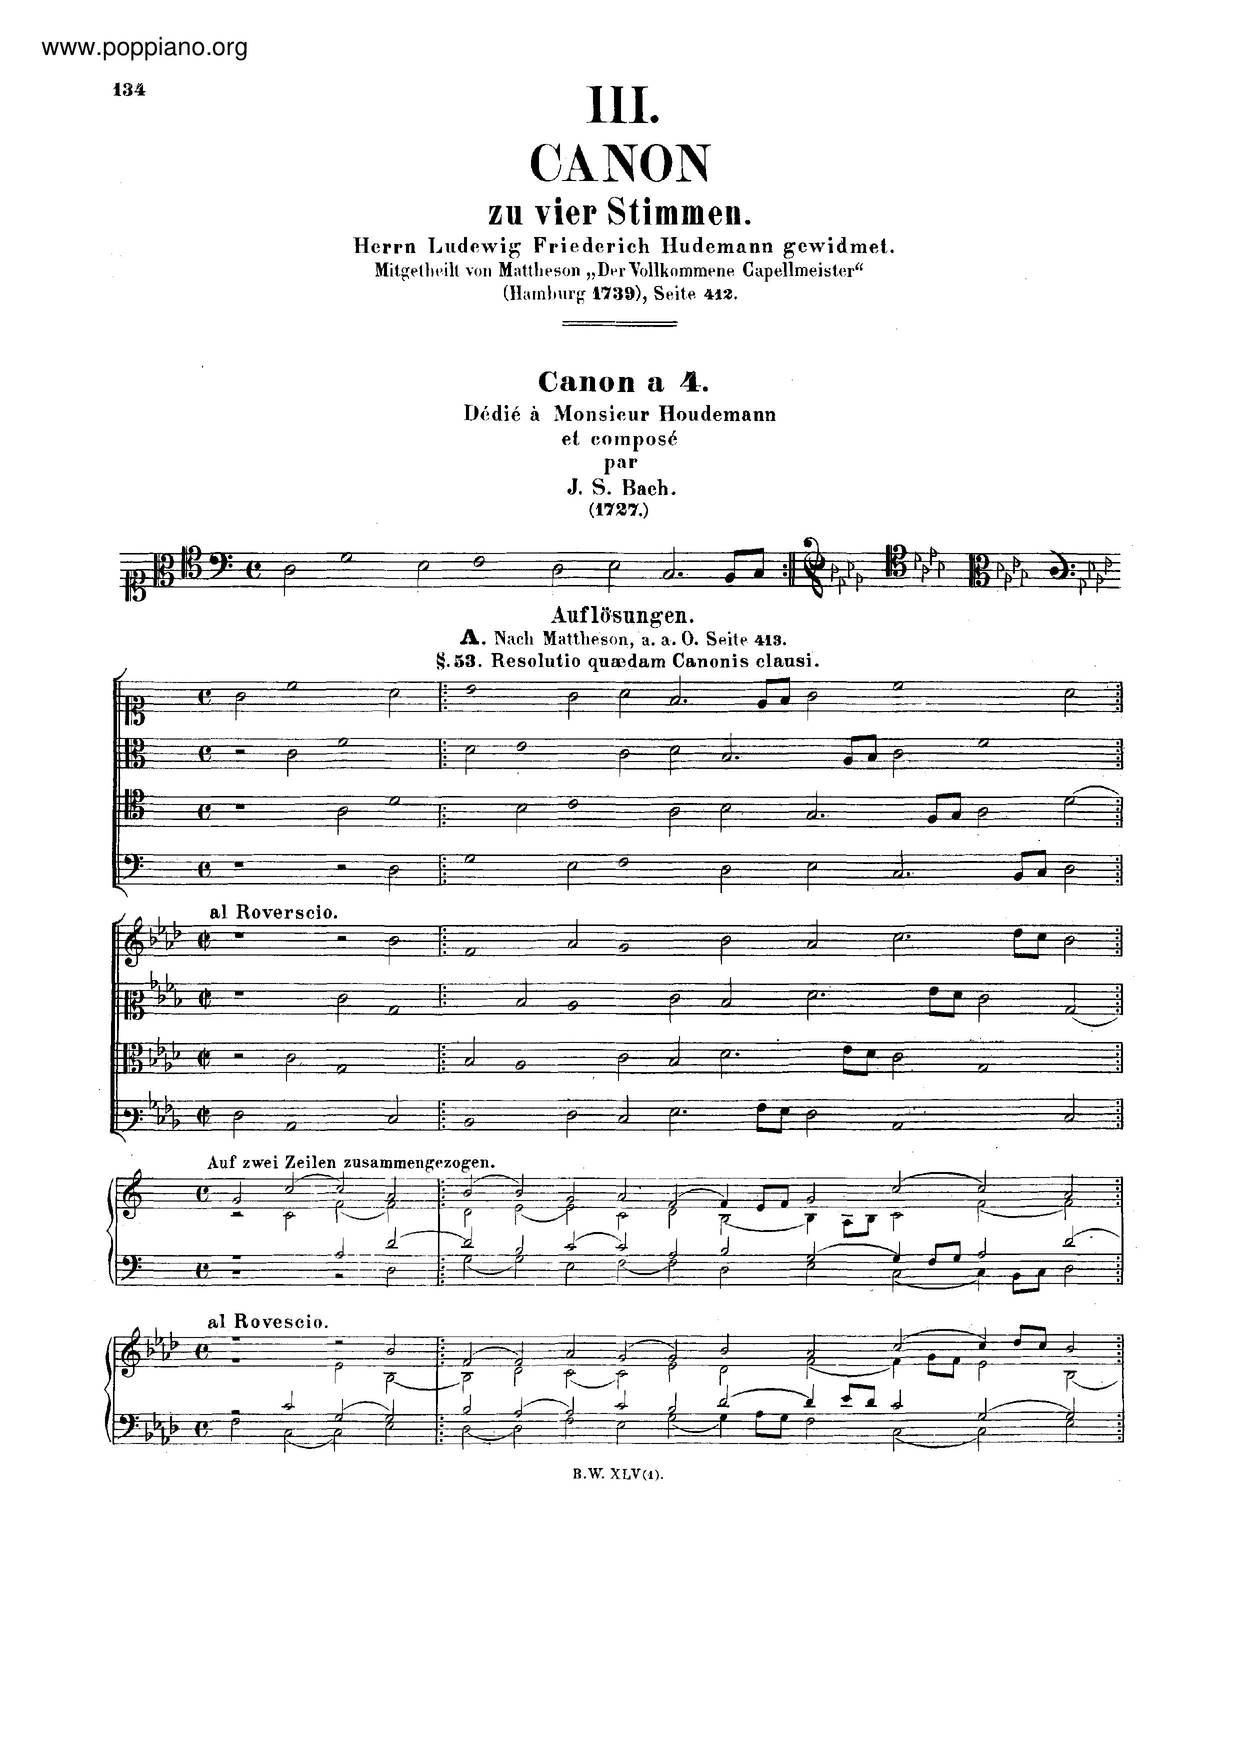 Canon In A Minor, BWV 1074琴譜